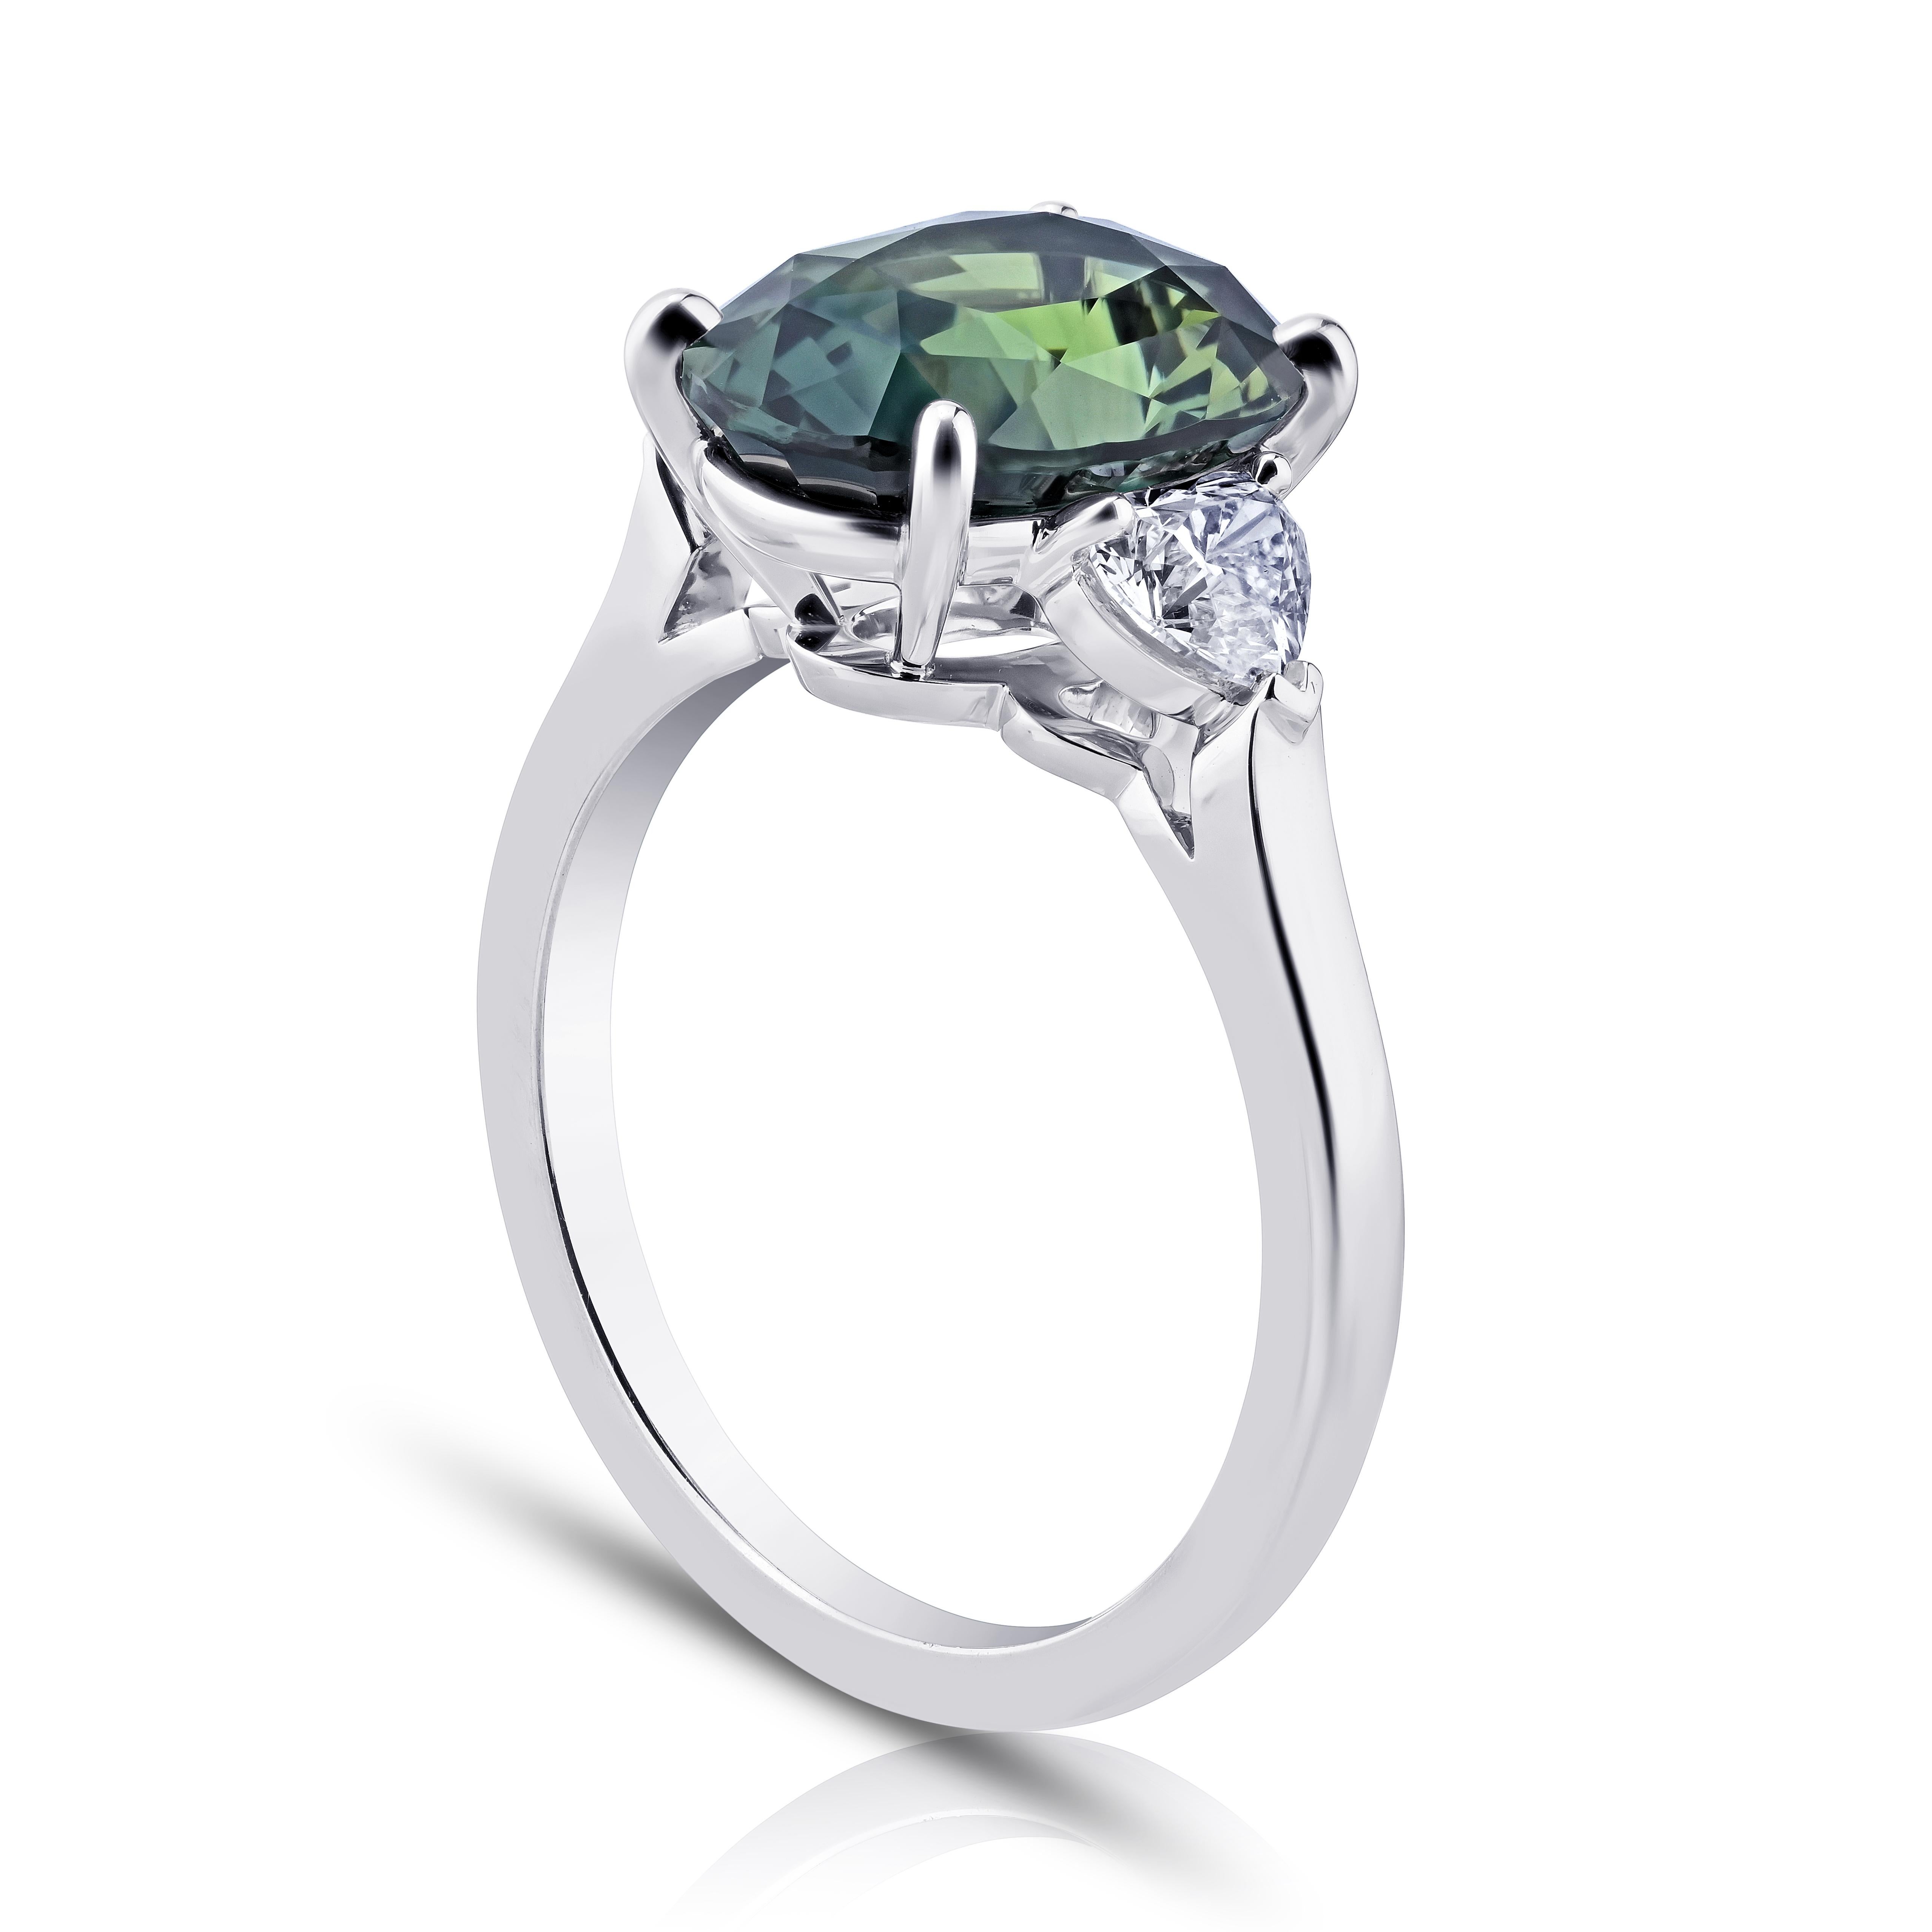 Ovale vert de 5.17 carats  Saphir et diamants brillants modifiés en forme de cœur de 0,63 carats sertis dans une bague en platine.